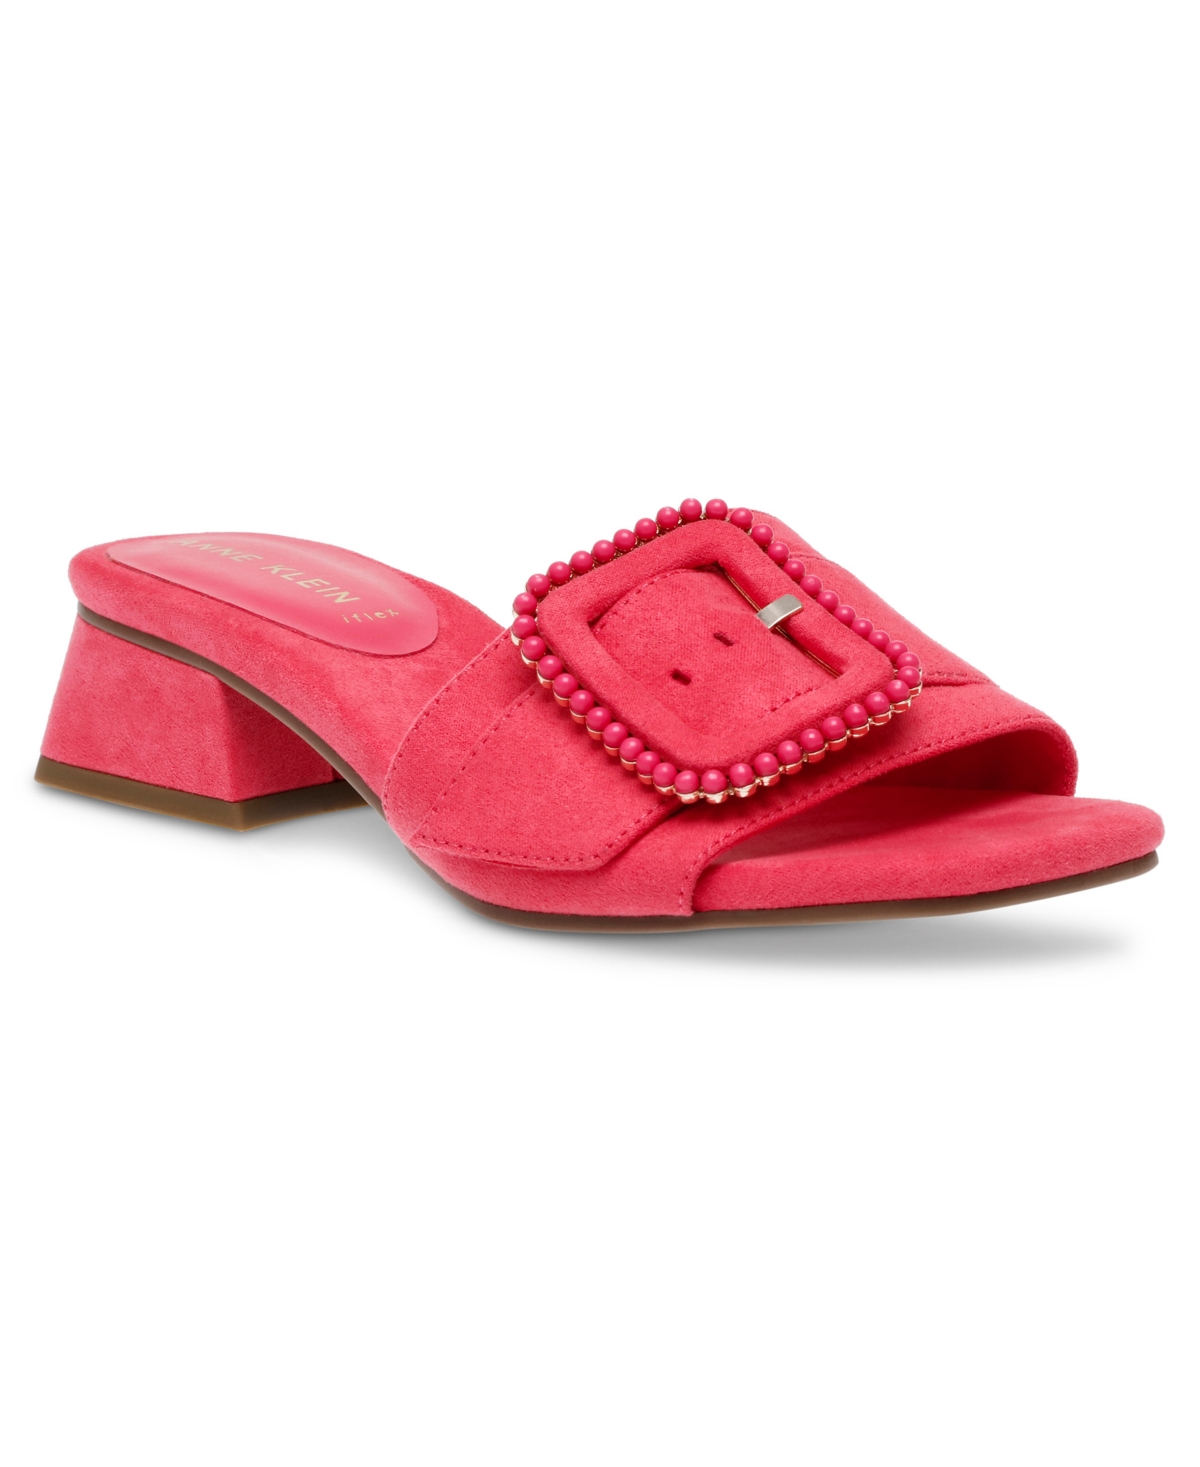 Women's Nessa Dress Sandals - Pink